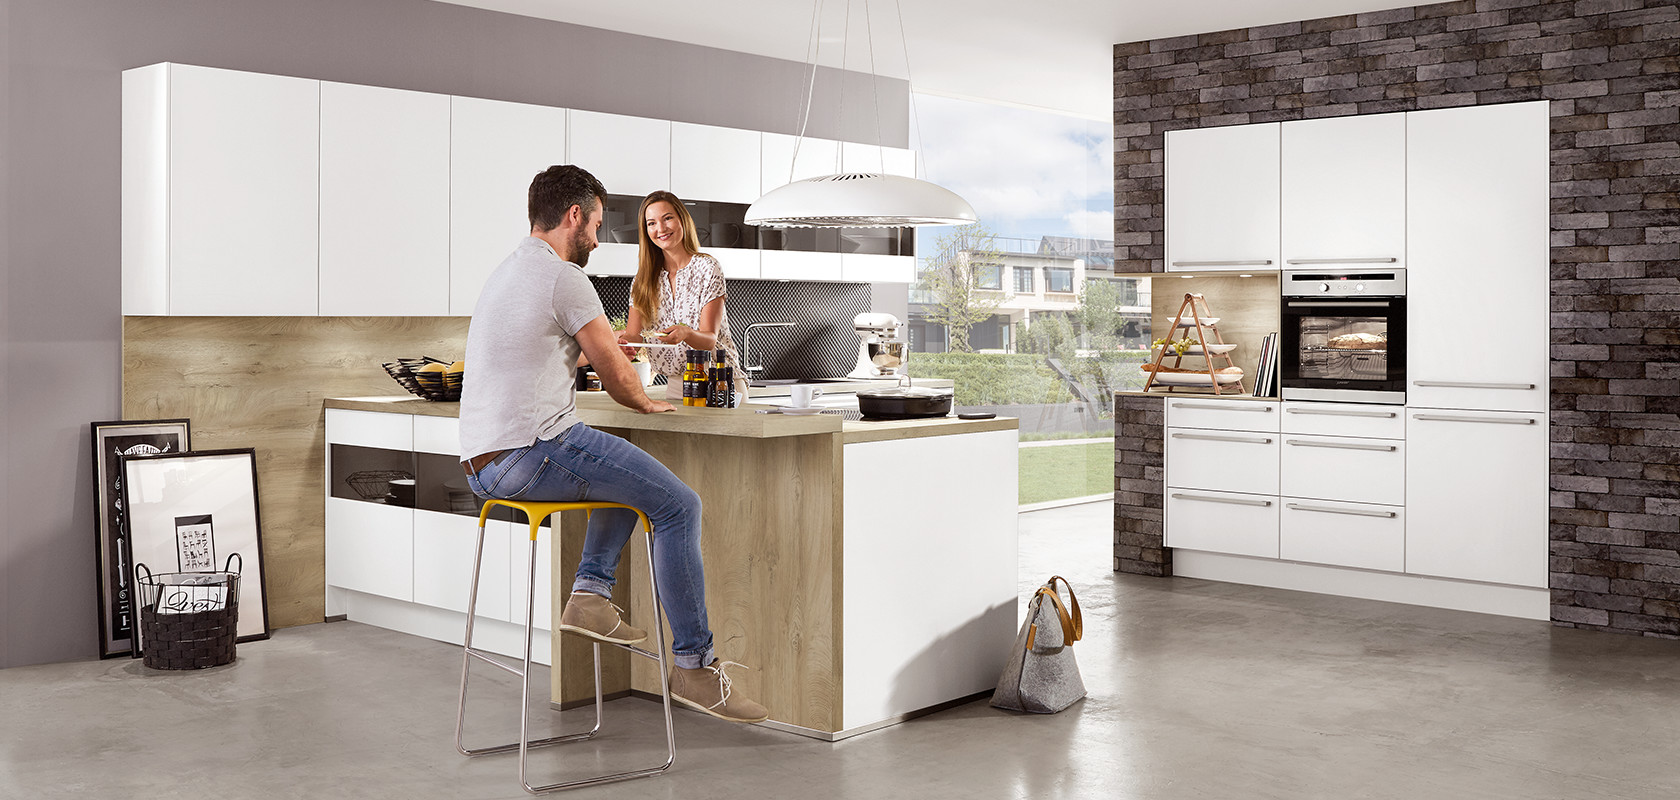 Een moderne keukenopstelling met een lachend stel dat betrokken is bij een maaltijdvoorbereidingseiland, met strakke apparaten en minimalistisch design esthetiek.